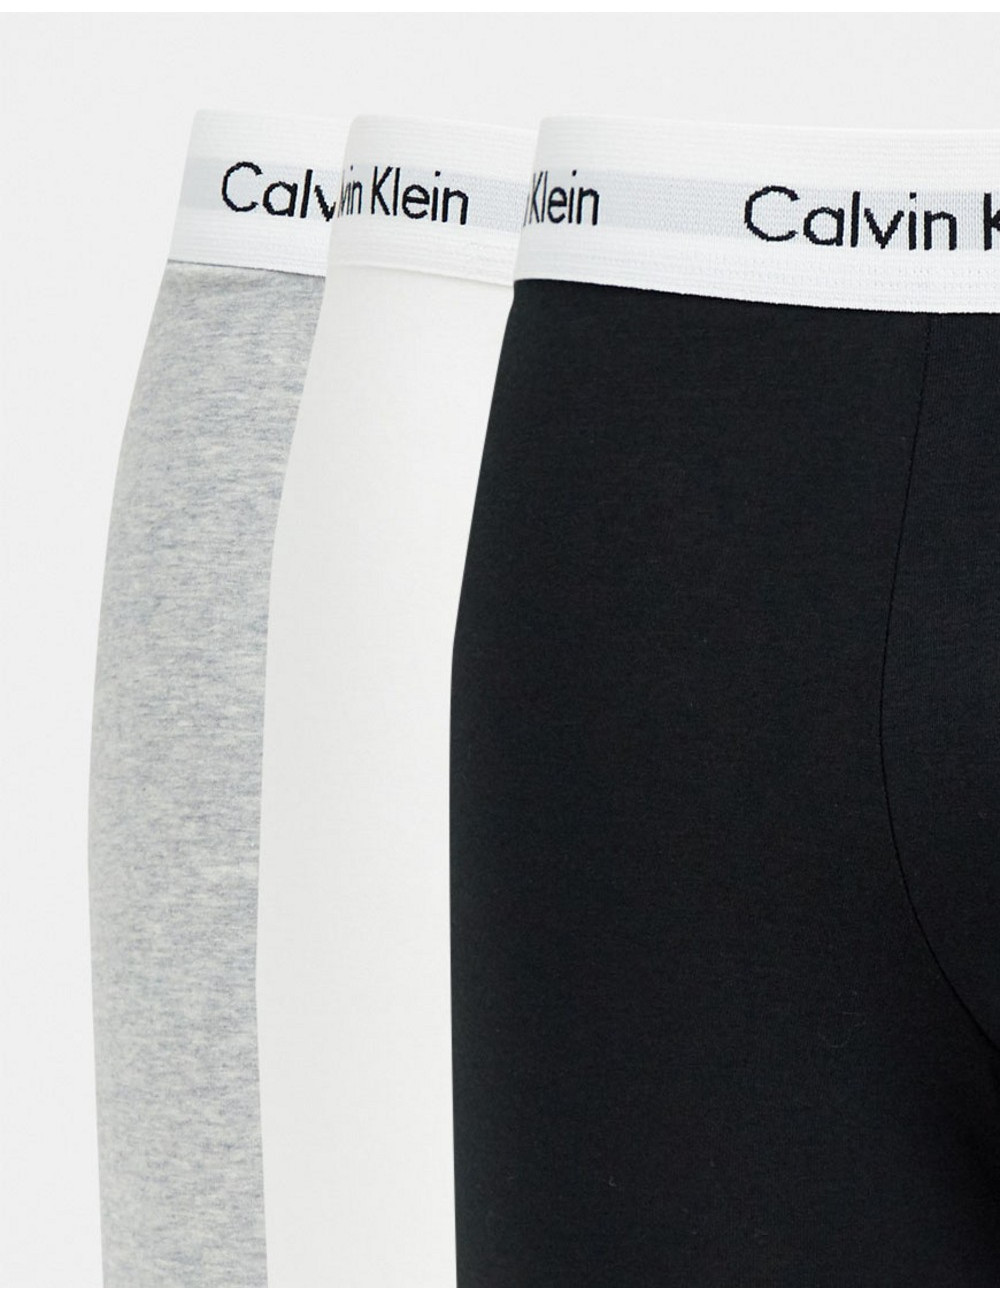 Calvin Klein Cotton 3 pack...